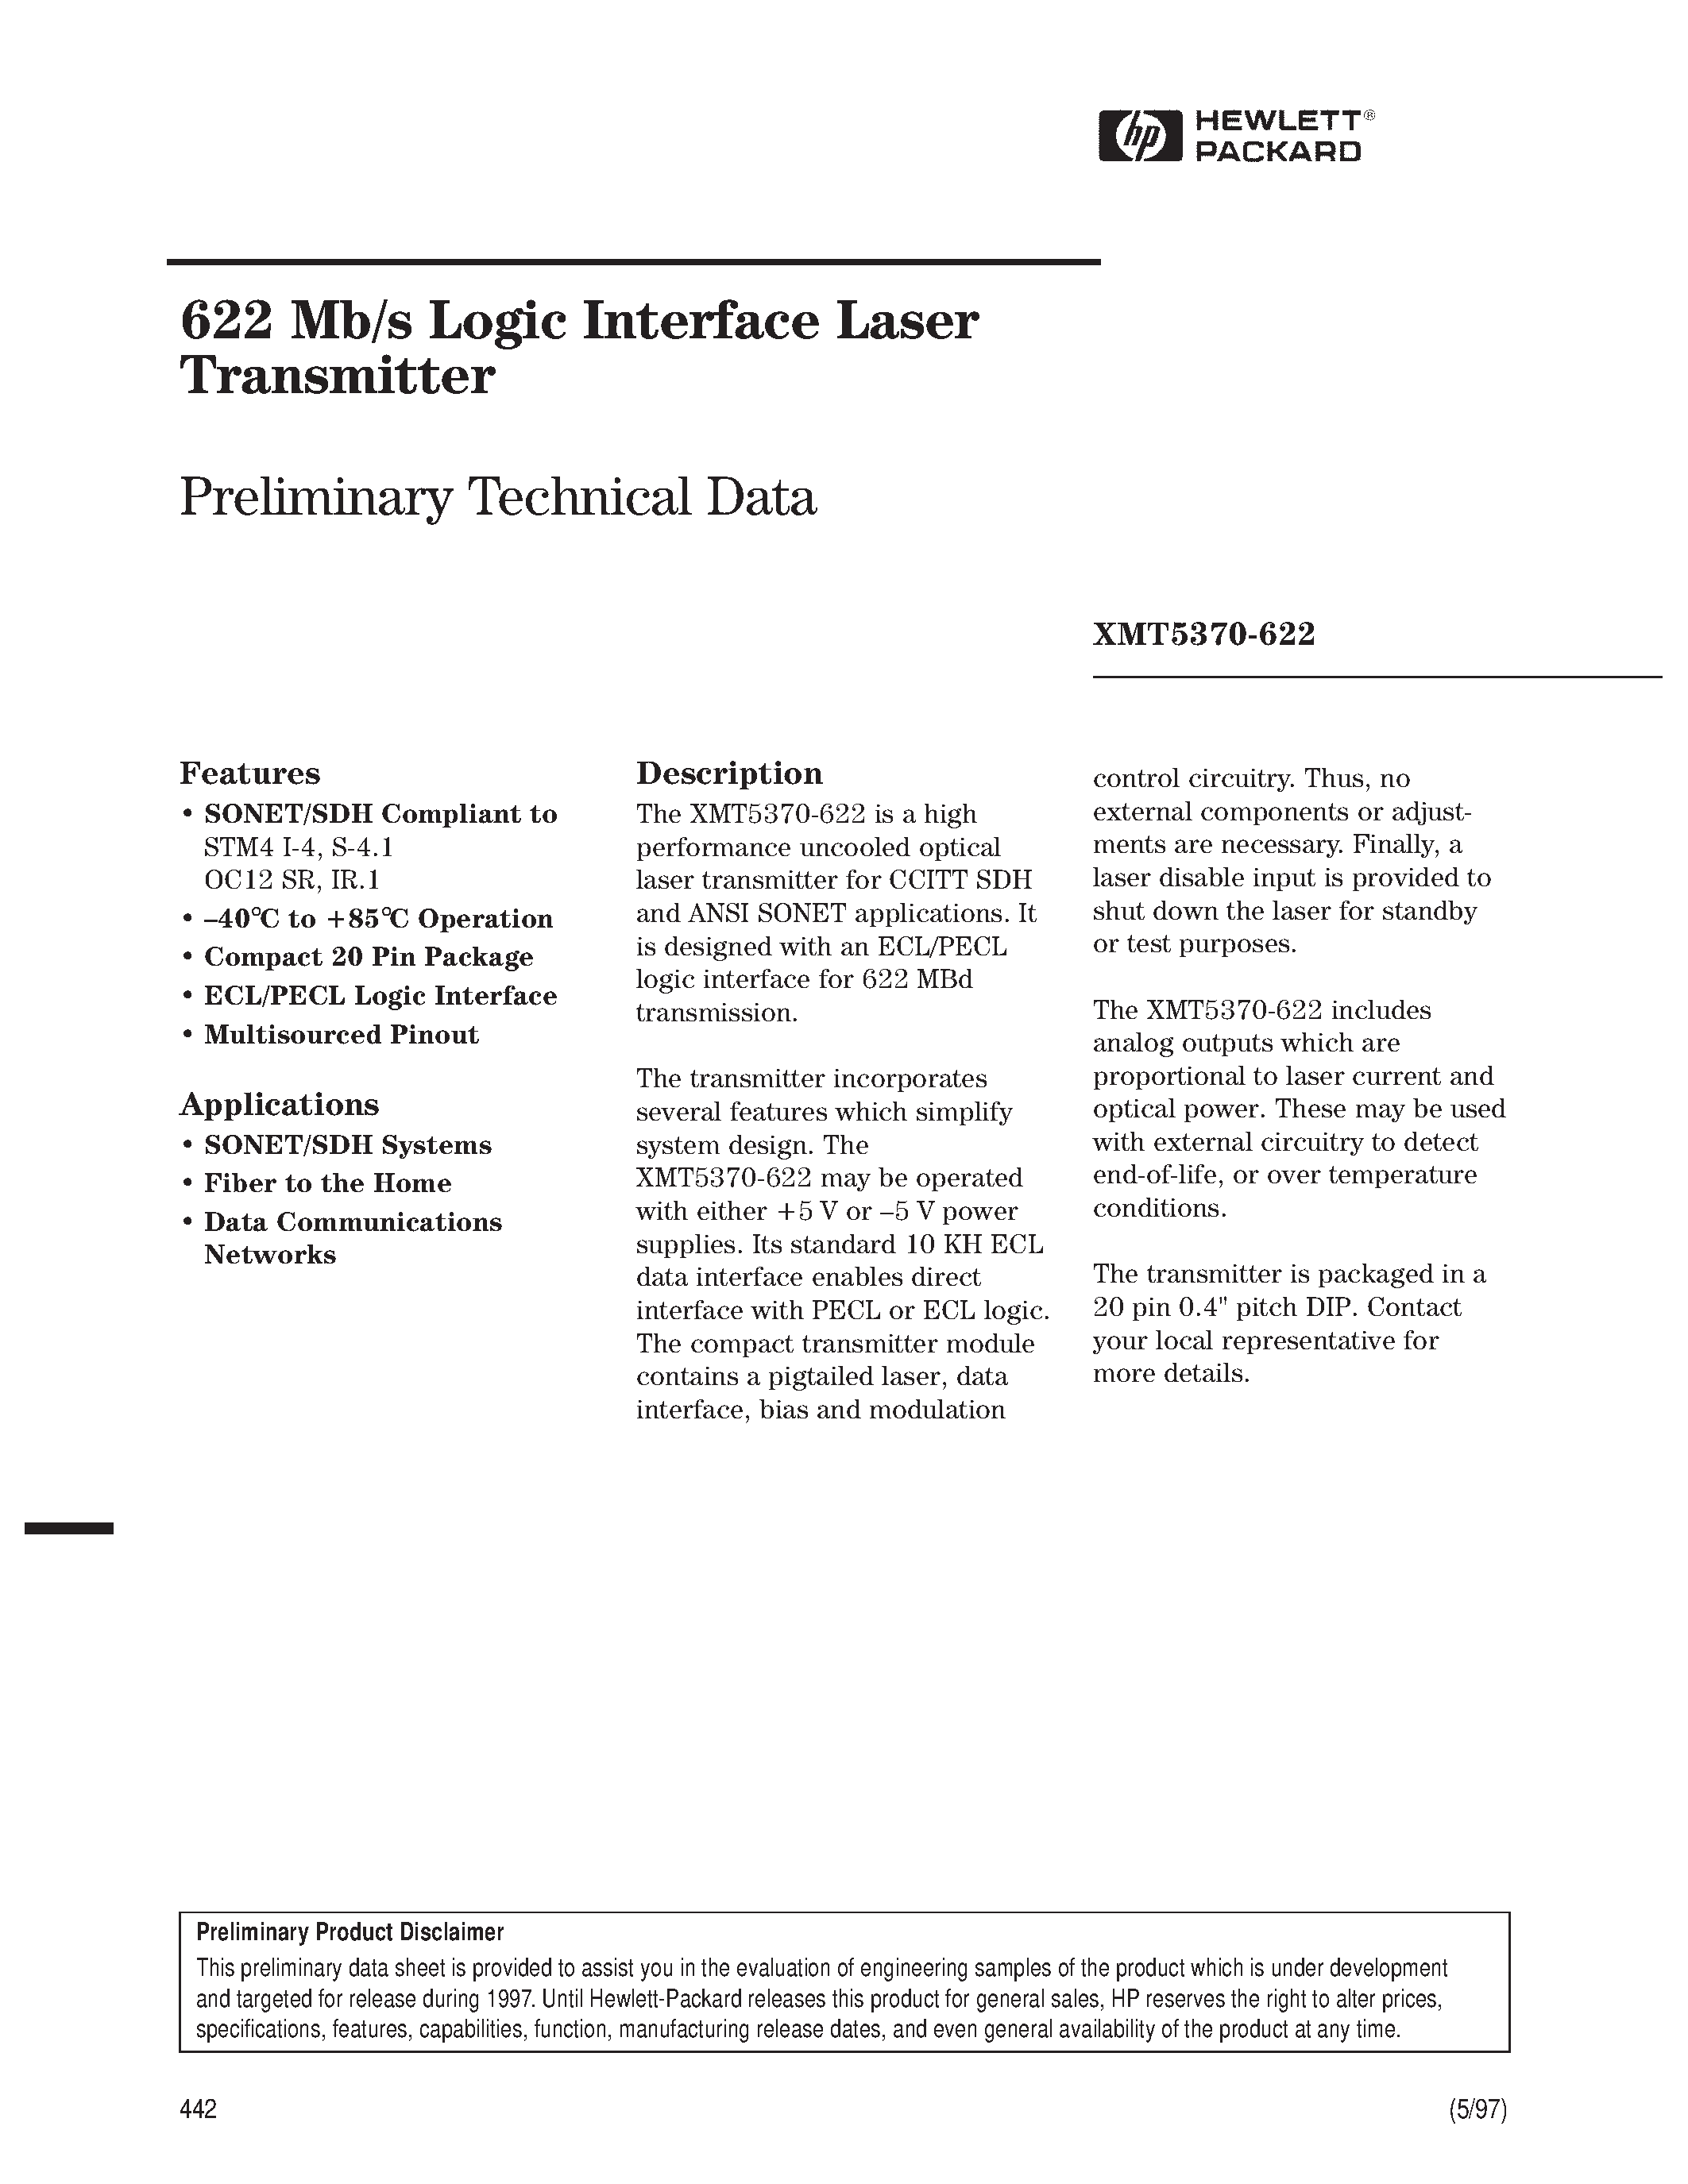 Datasheet XMT5160A-155-SC - 622 Mb/s Logic Interface Laser Transmitter page 1